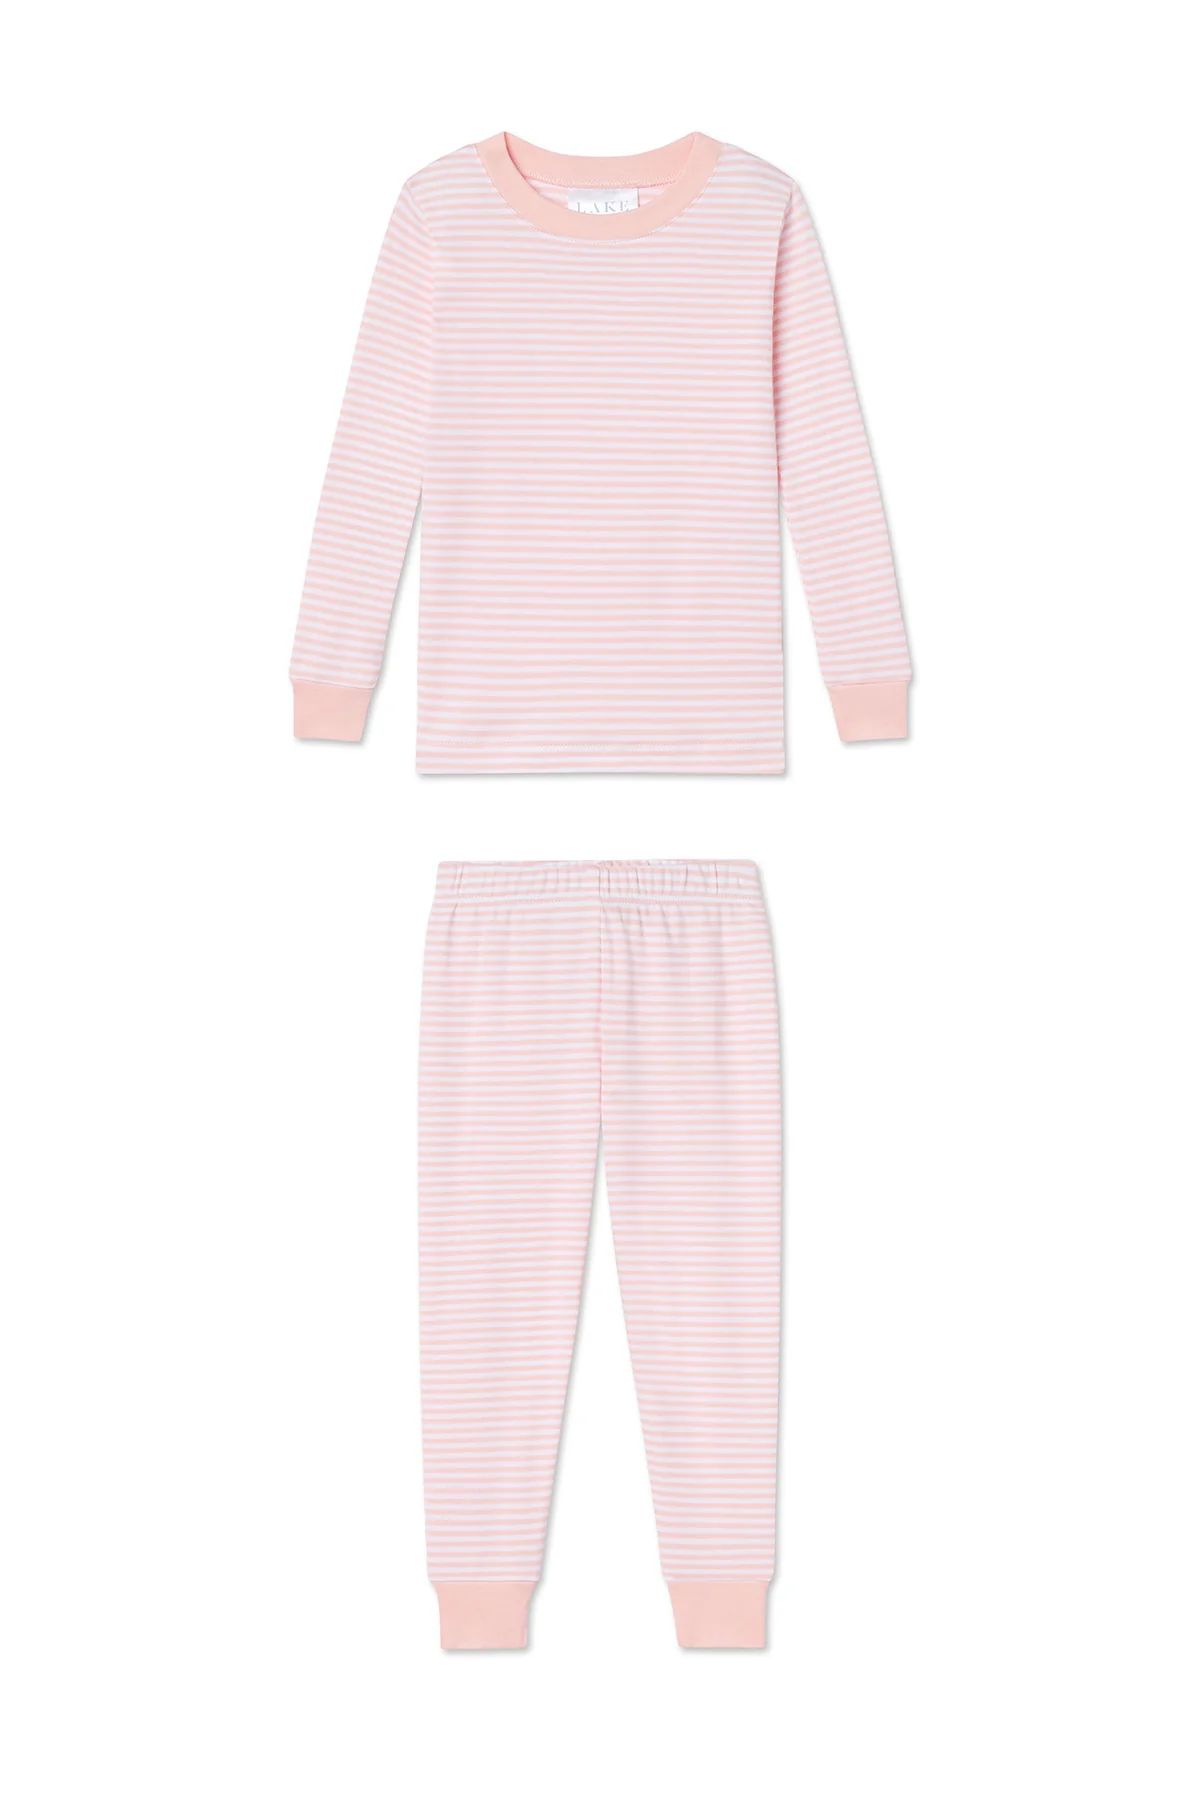 Kids Long-Long Set in English Rose Stripe | Lake Pajamas